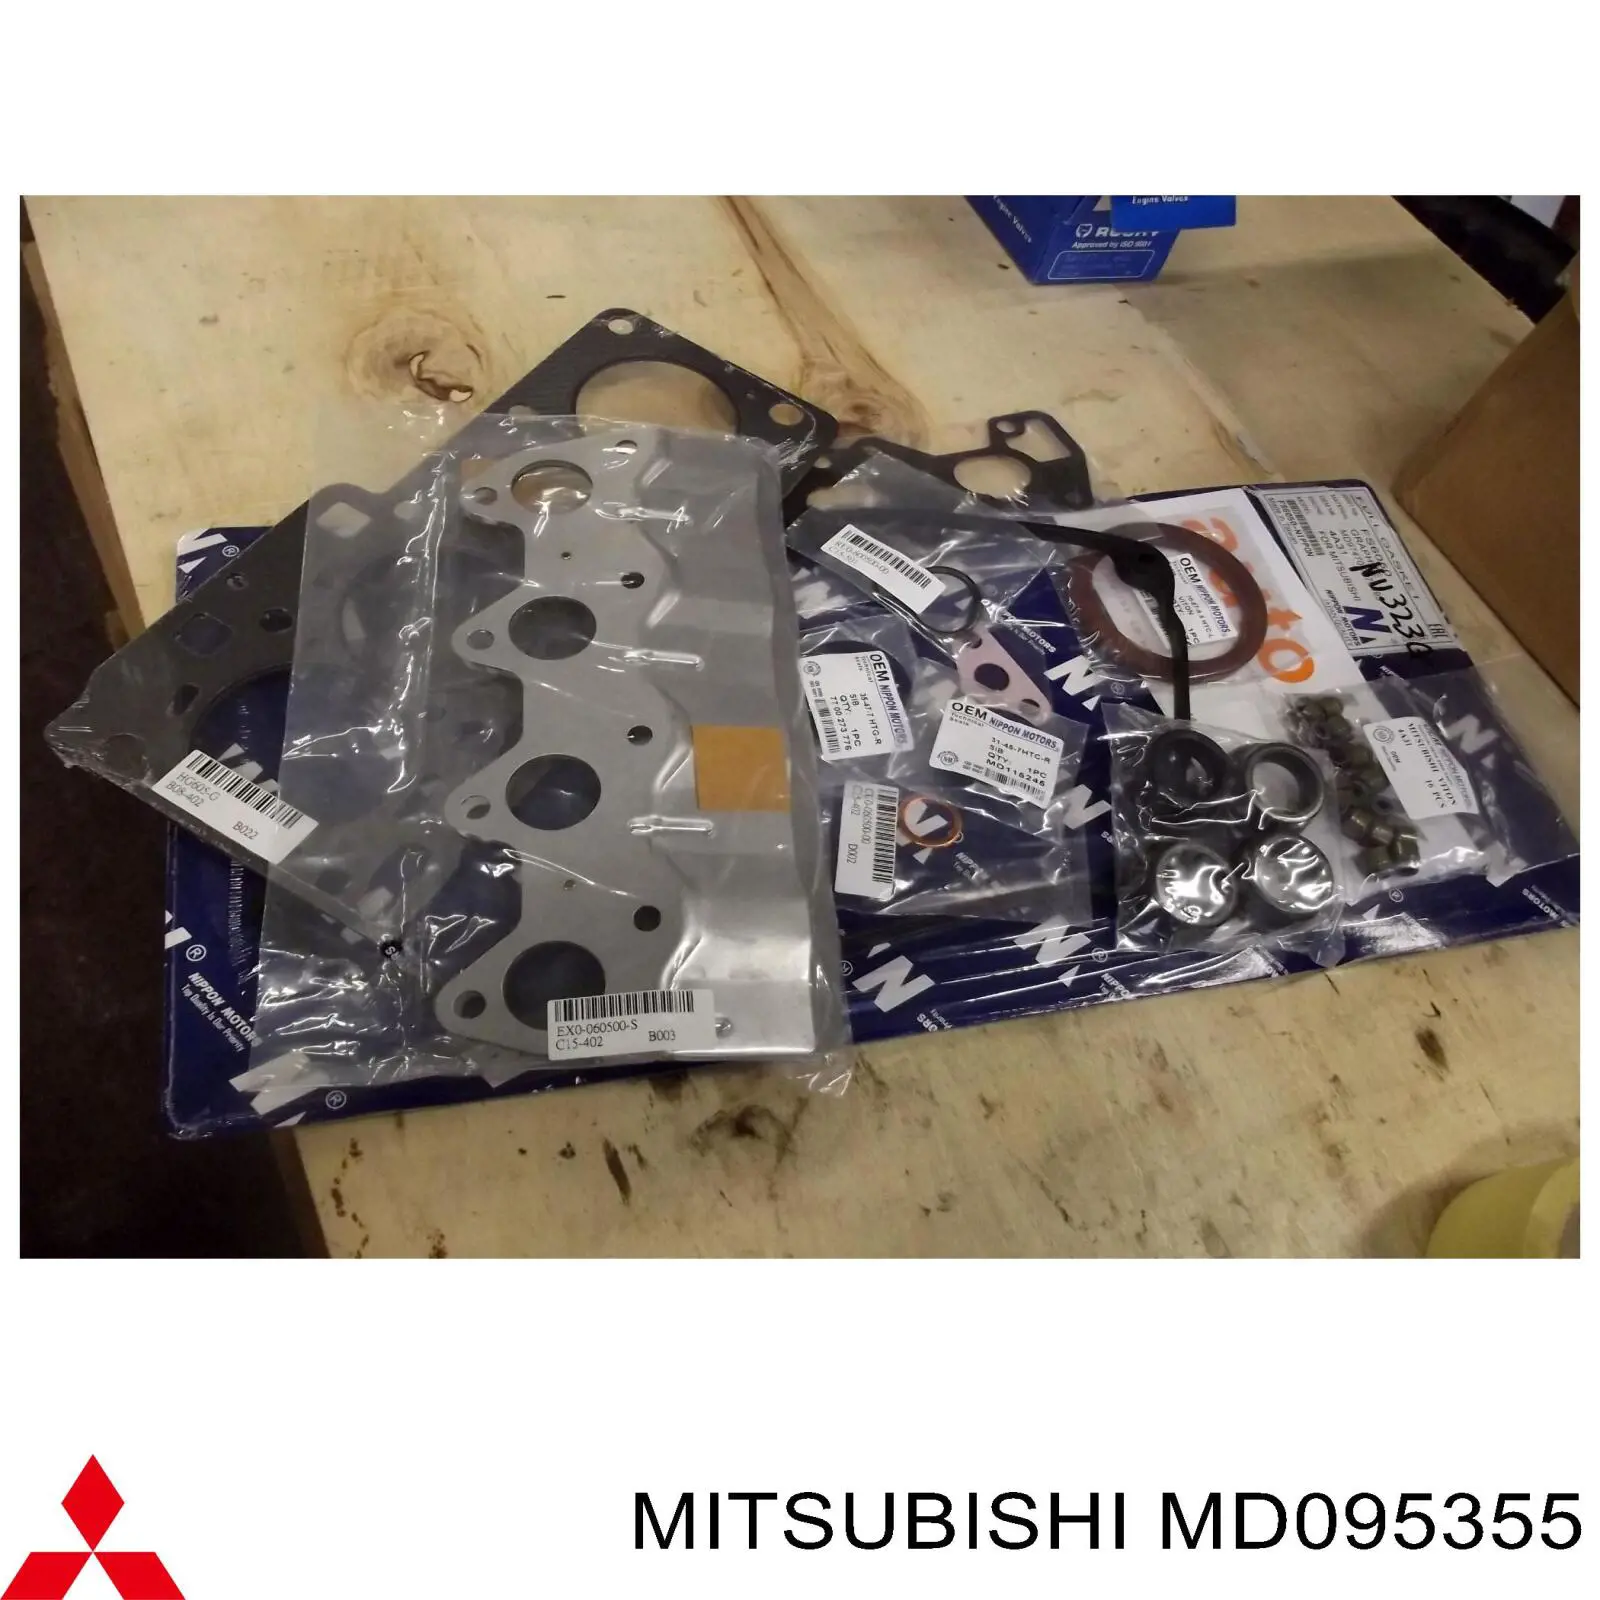 MD095355 Mitsubishi sello de aceite transmision automatica